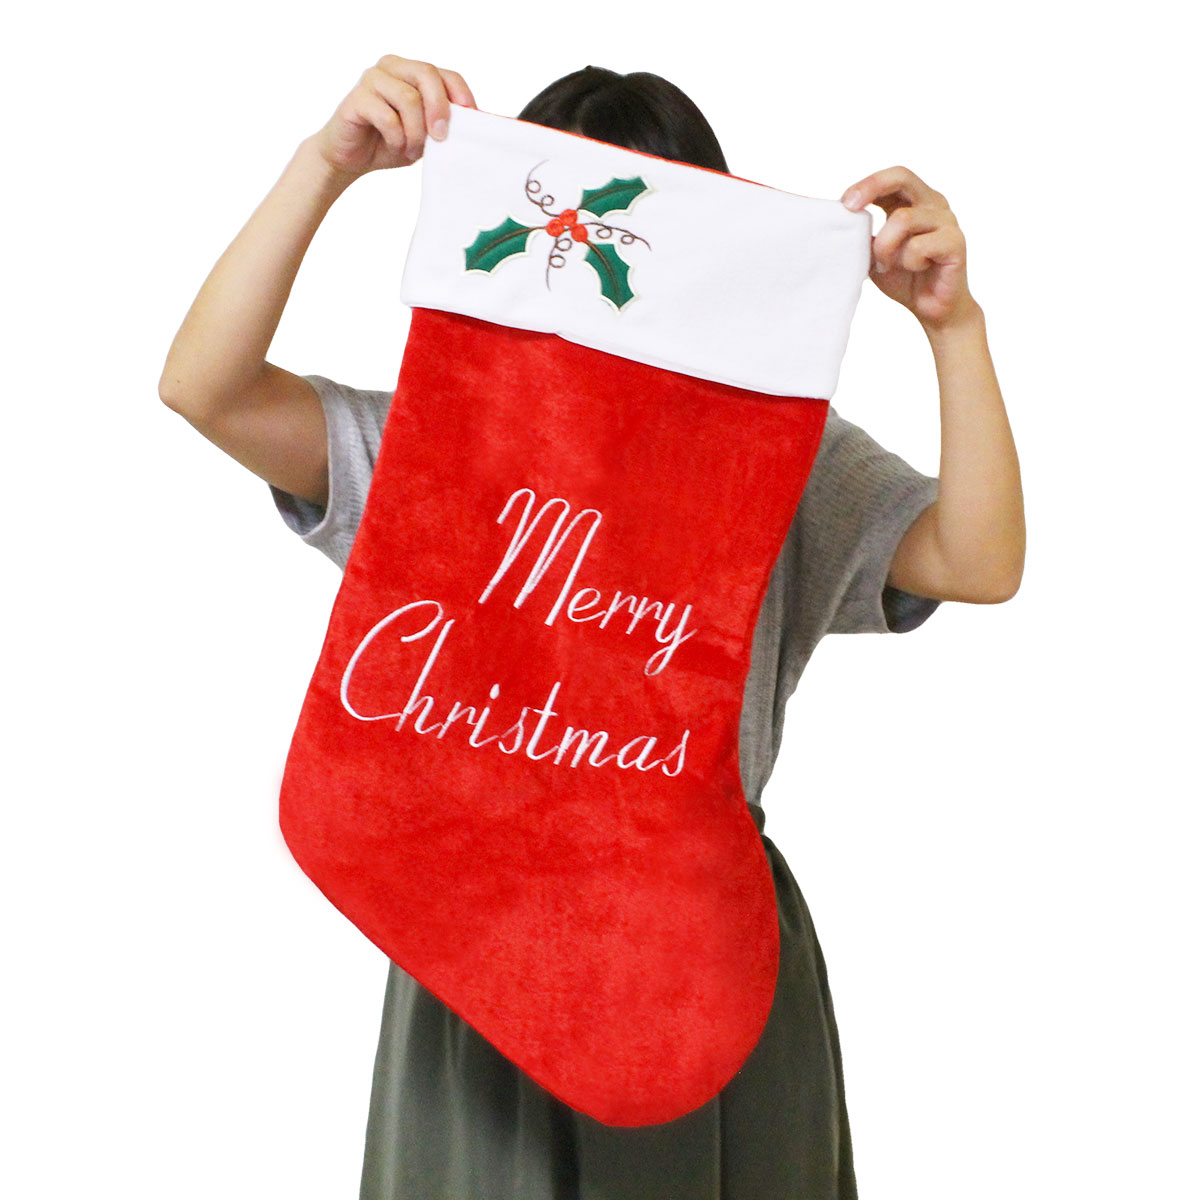 楽天市場 クリスマス 靴下 プレゼント 大きい サンタ くつ下 サンタクロース ソックス クリスマスプレゼント いいひ 楽天市場店